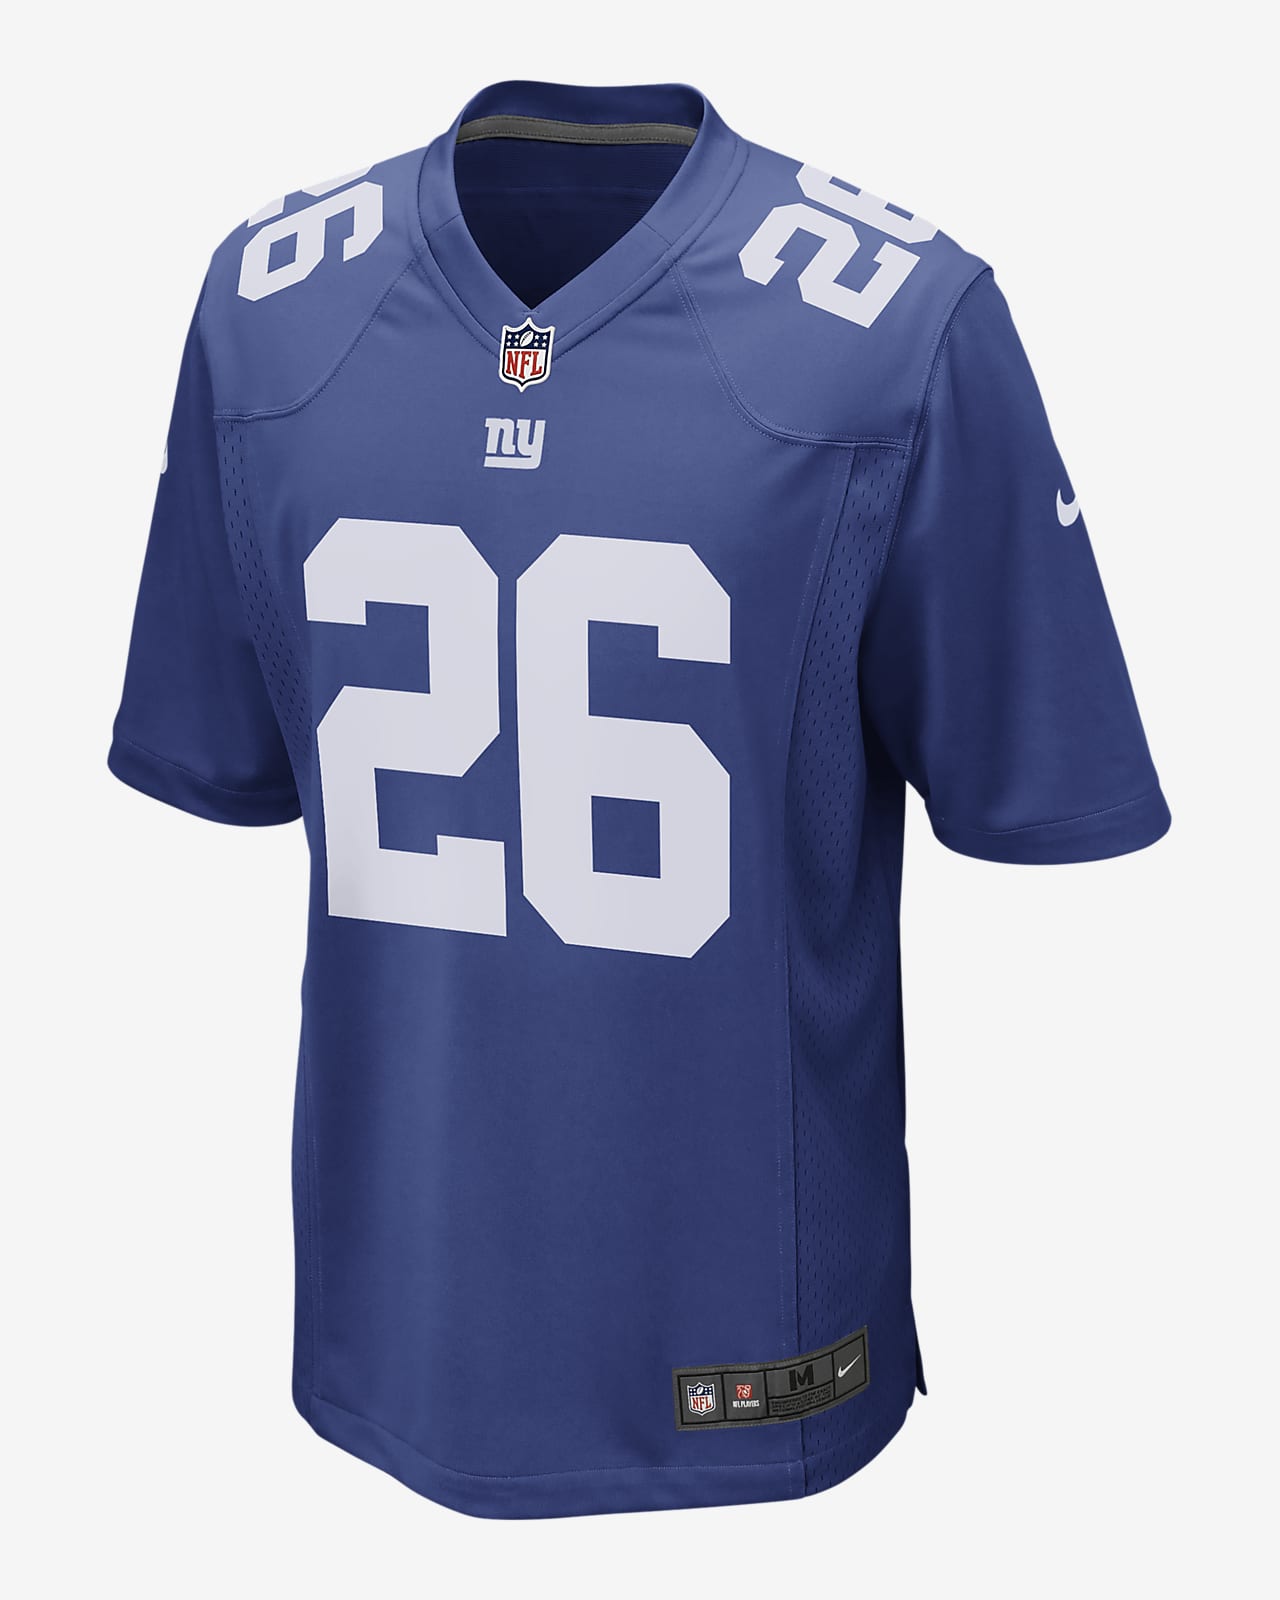 Męska koszulka meczowa do futbolu amerykańskiego NFL New York Giants (Saquon Barkley)